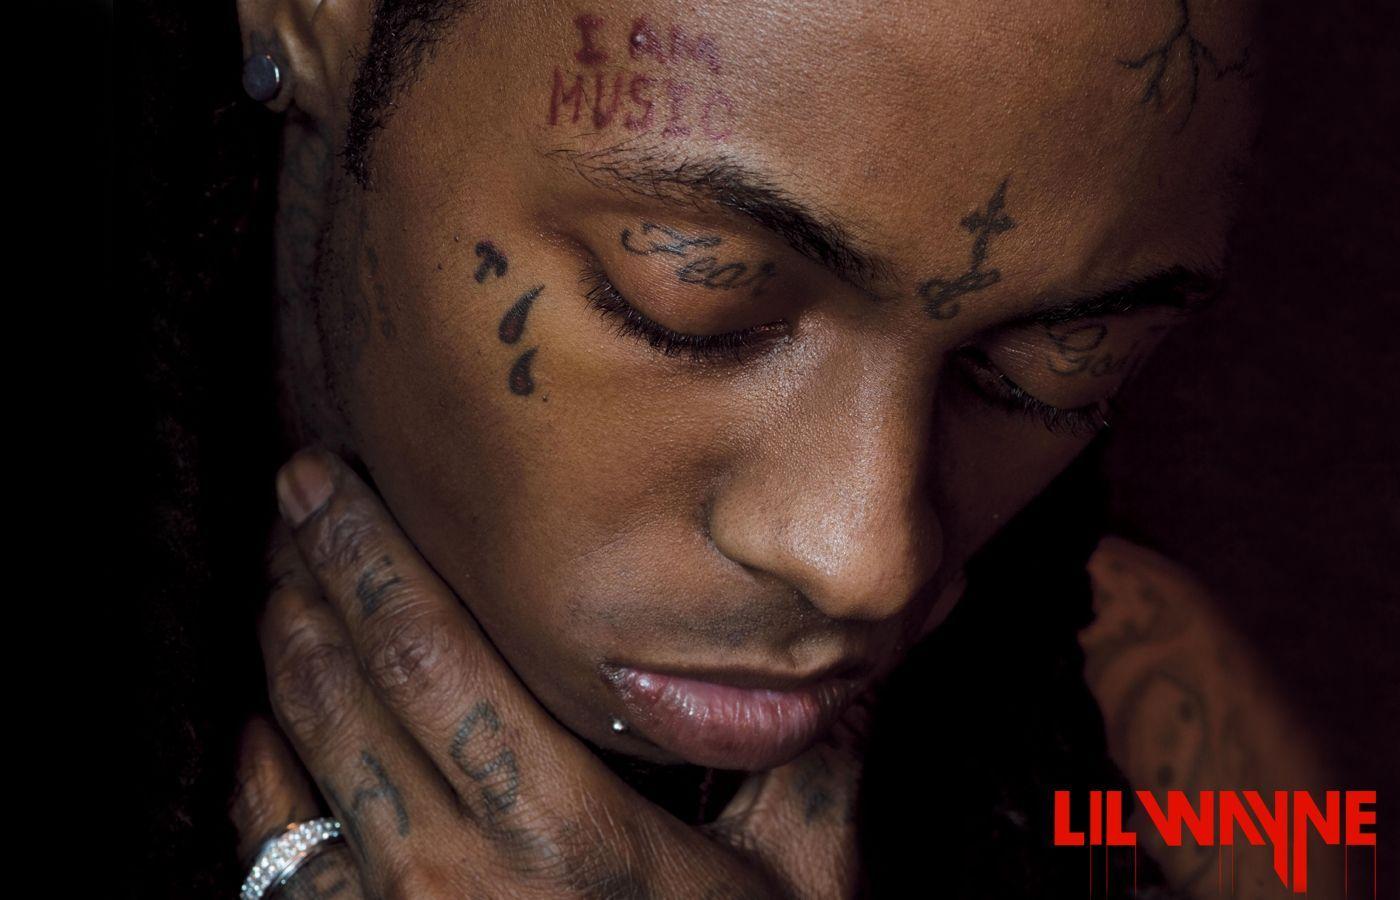 Download the Lil Wayne Up Close Wallpaper, Lil Wayne Up Close